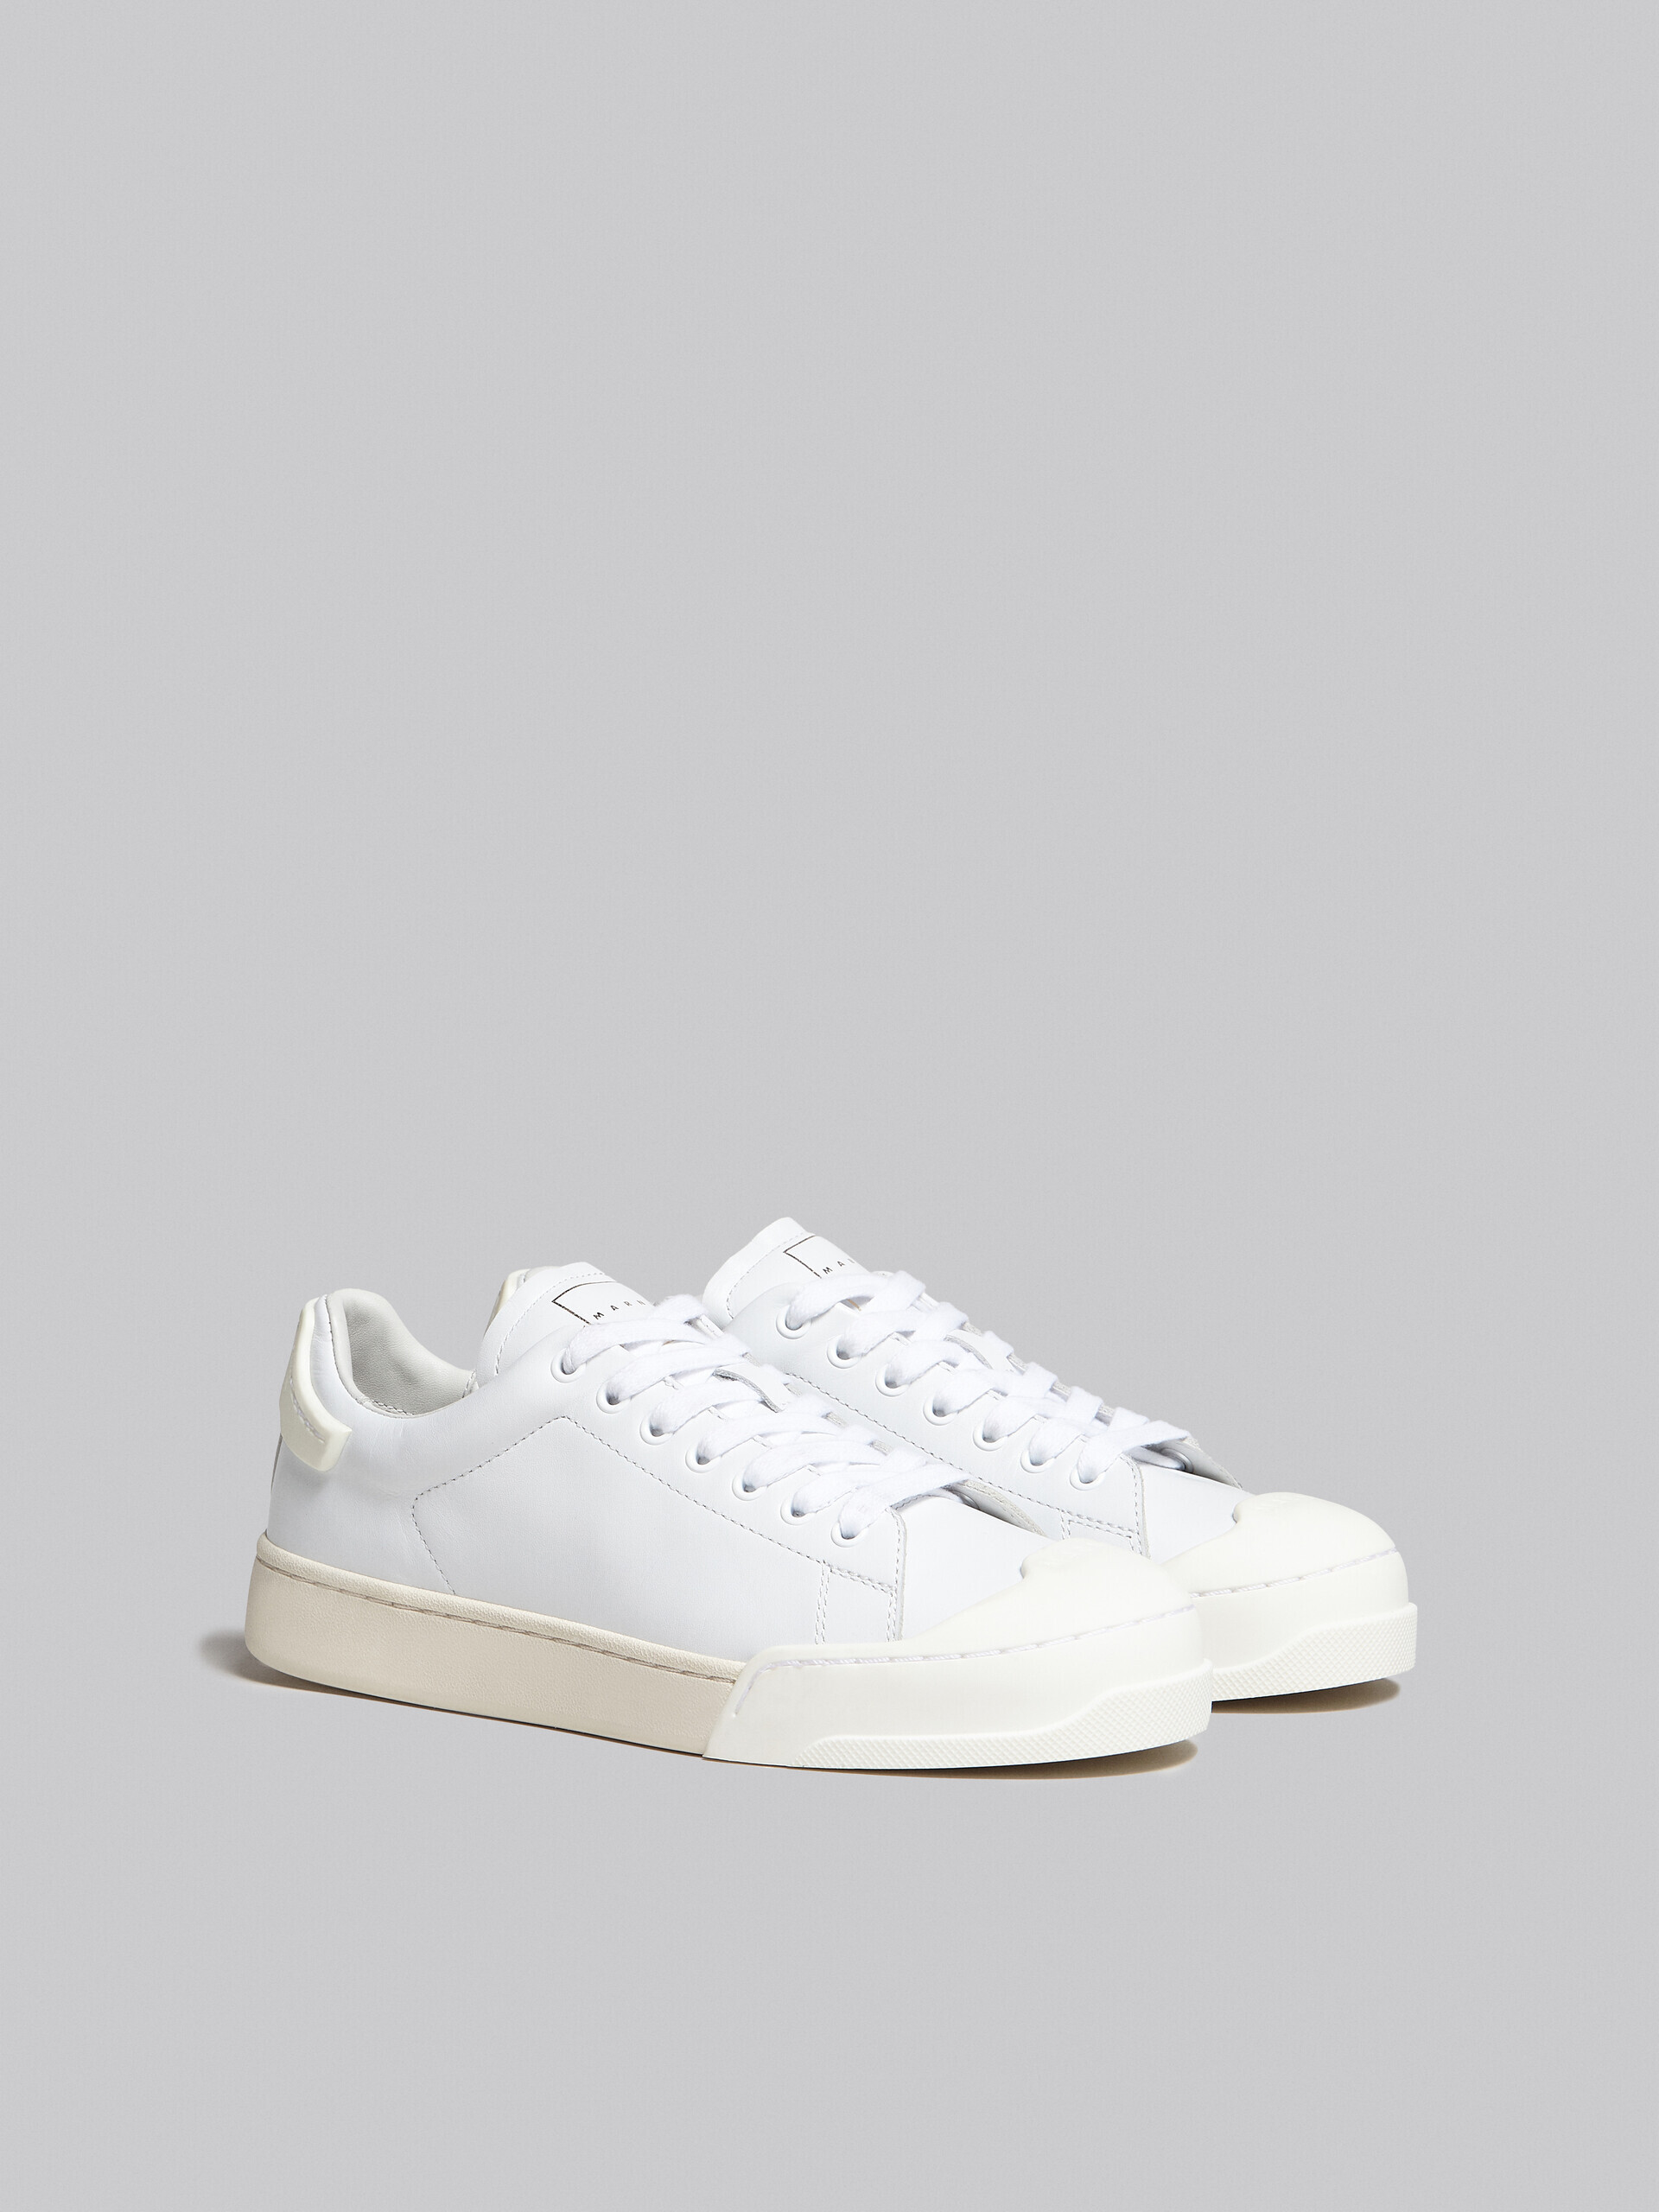 Sneakers Dada Bumper en cuir blanc - Sneakers - Image 2